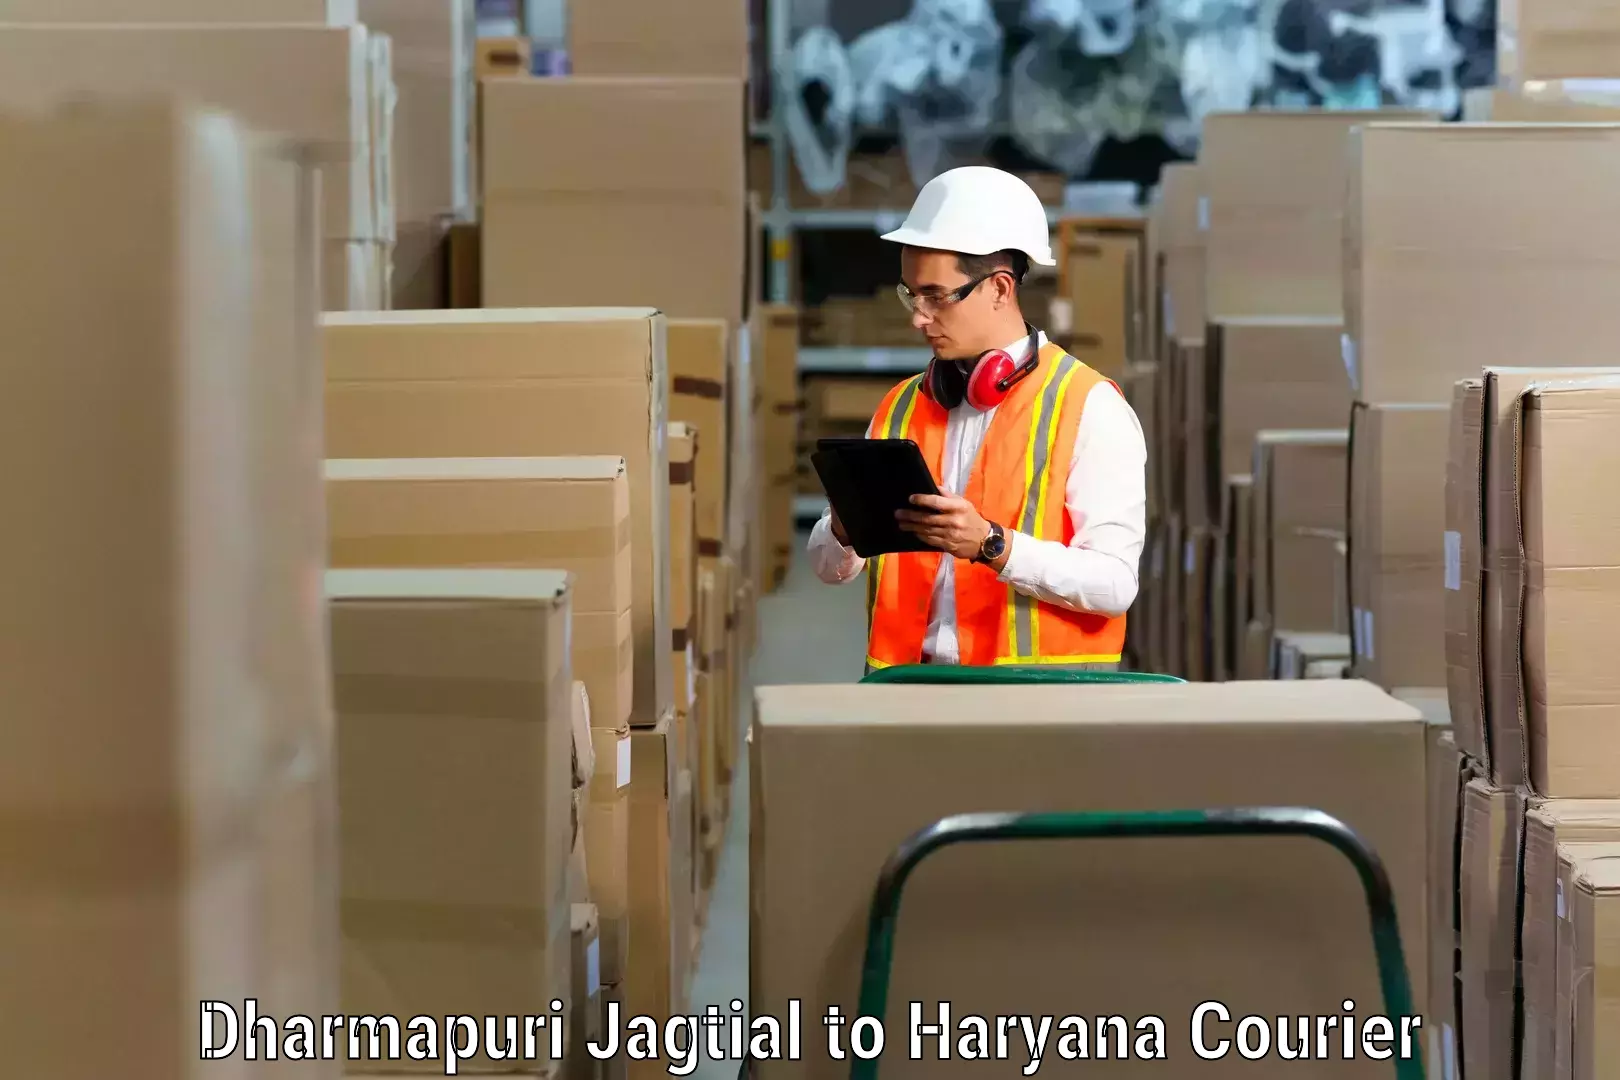 Furniture moving experts Dharmapuri Jagtial to Hodal